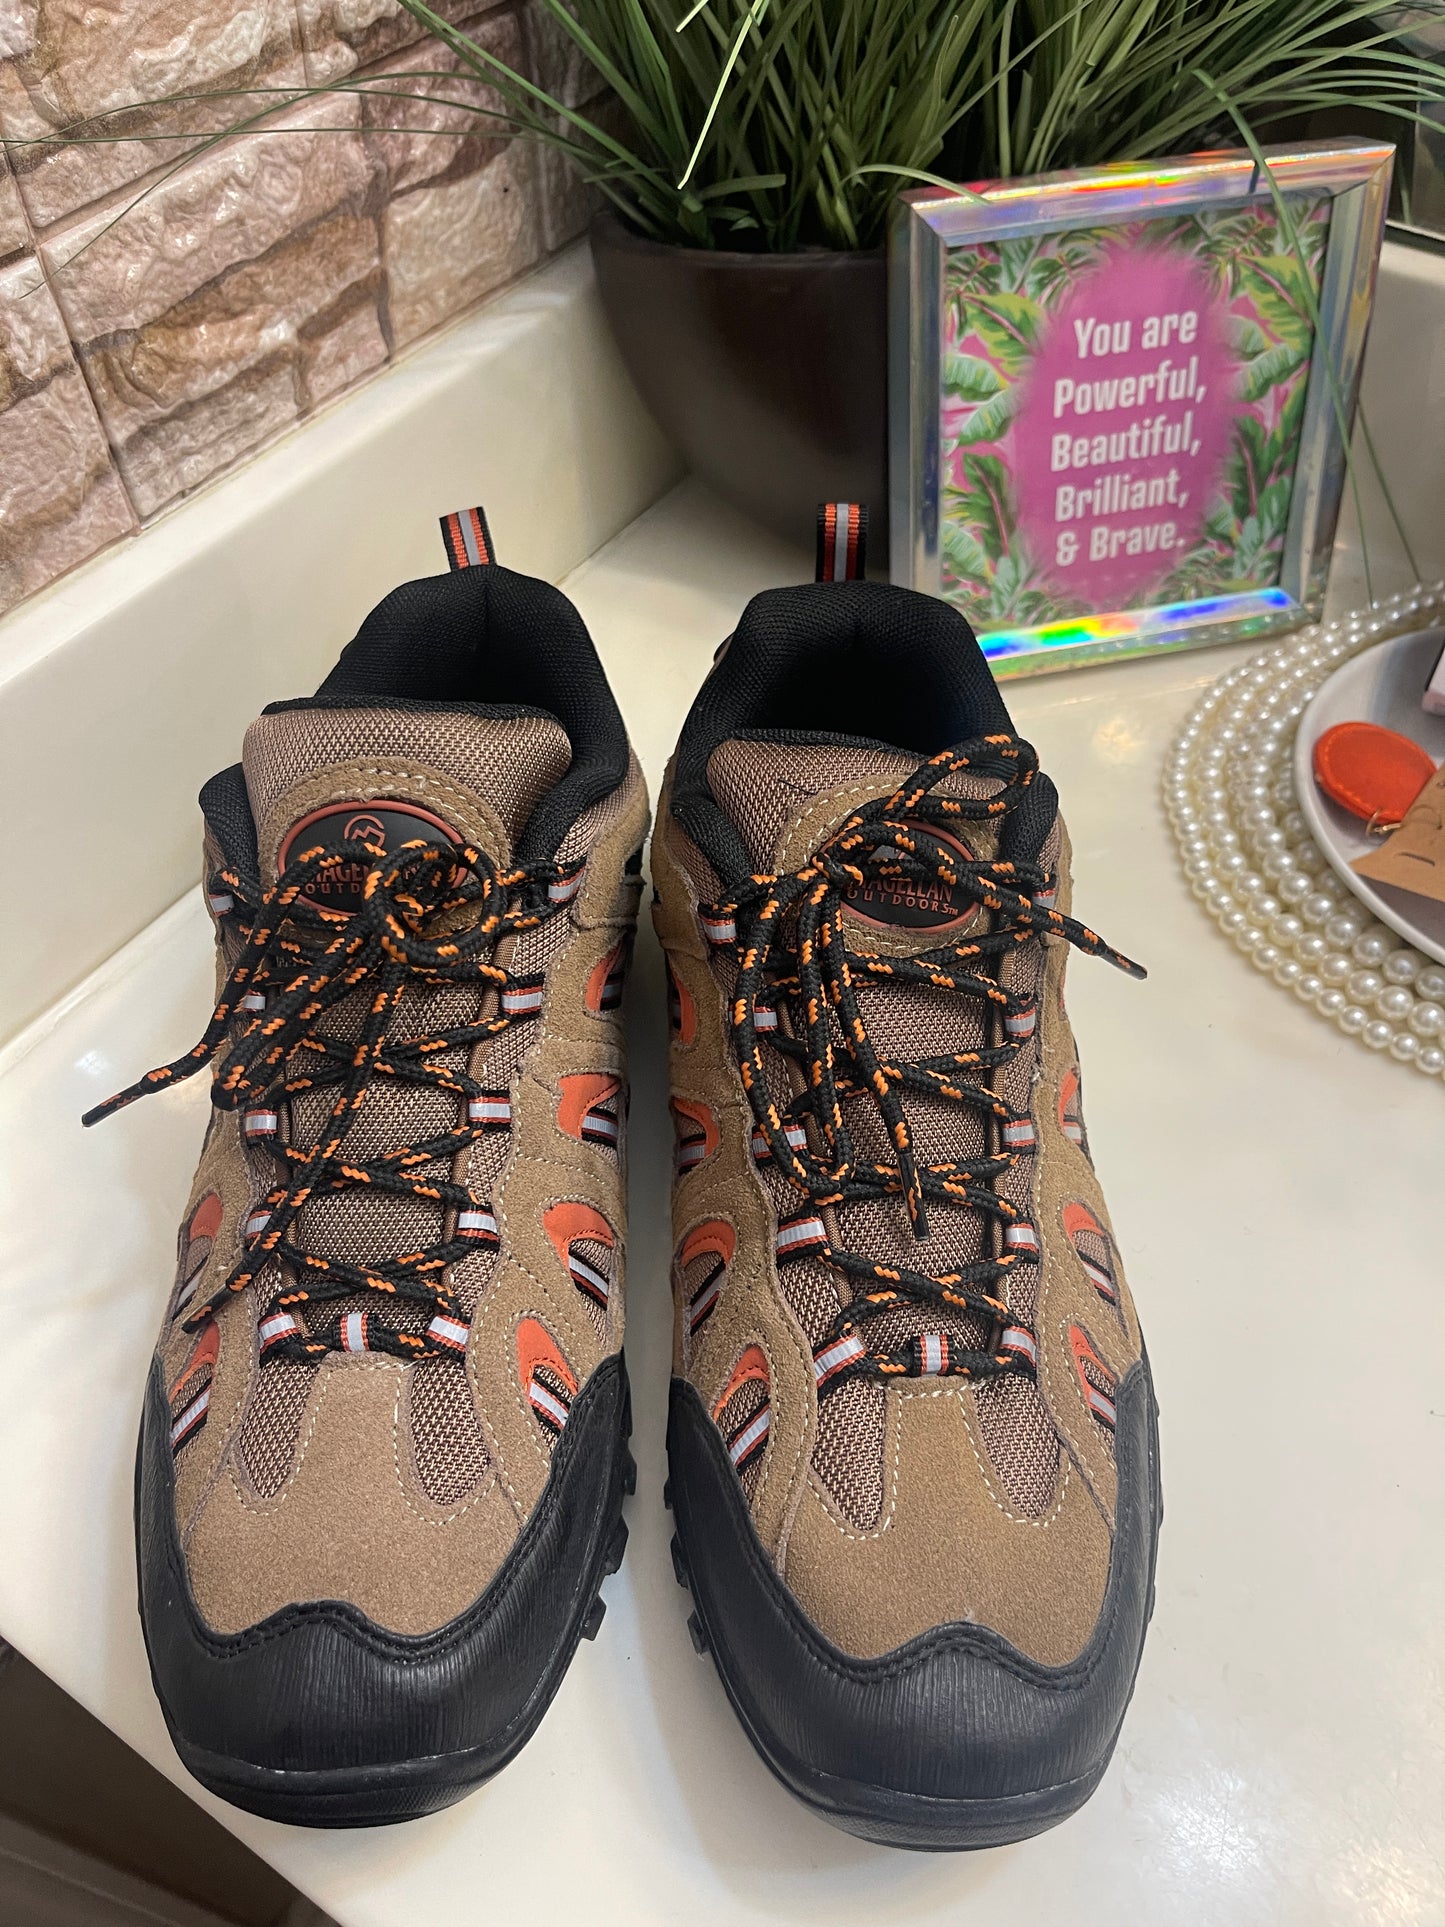 NEW Magellan Brown Hiking Sneakers Men sz 10